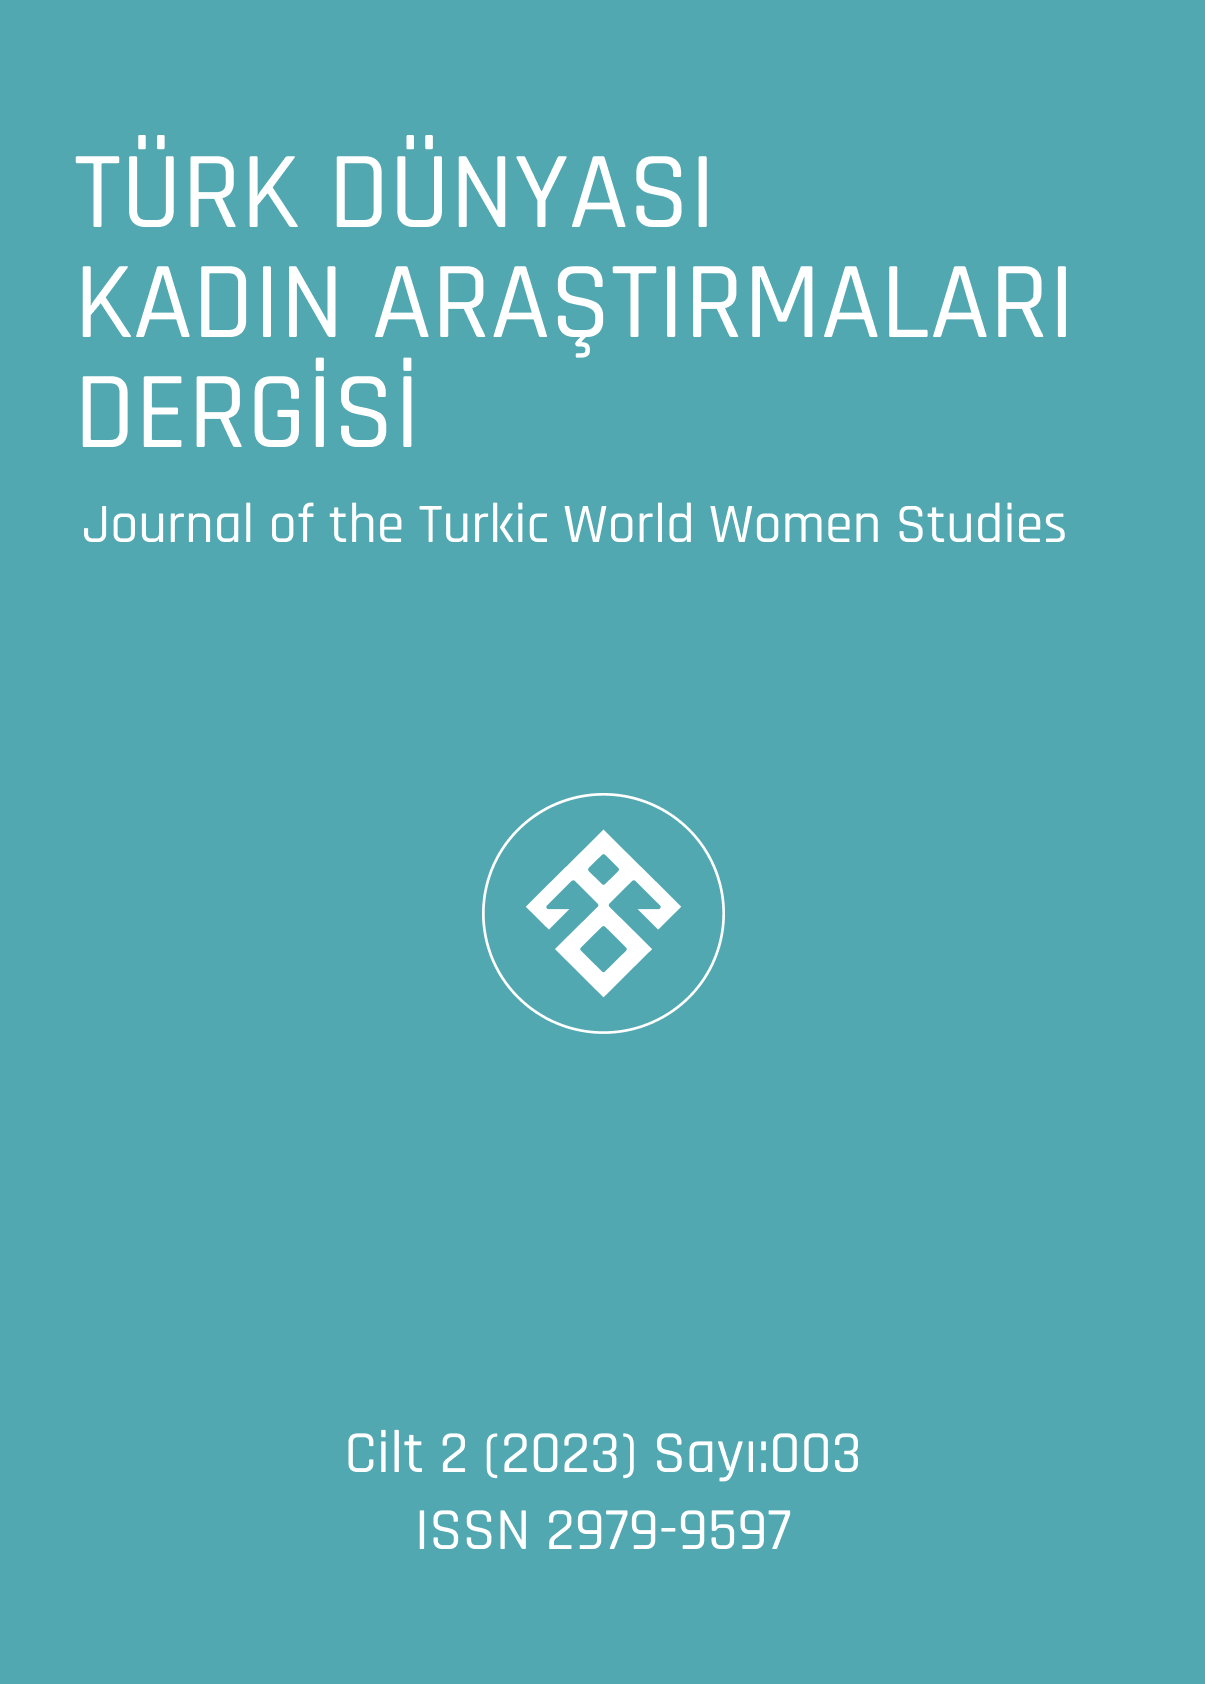 					Cilt 2 Sayı 3 (2023): Türk Dünyası Kadın Araştırmaları Dergisi Gör
				